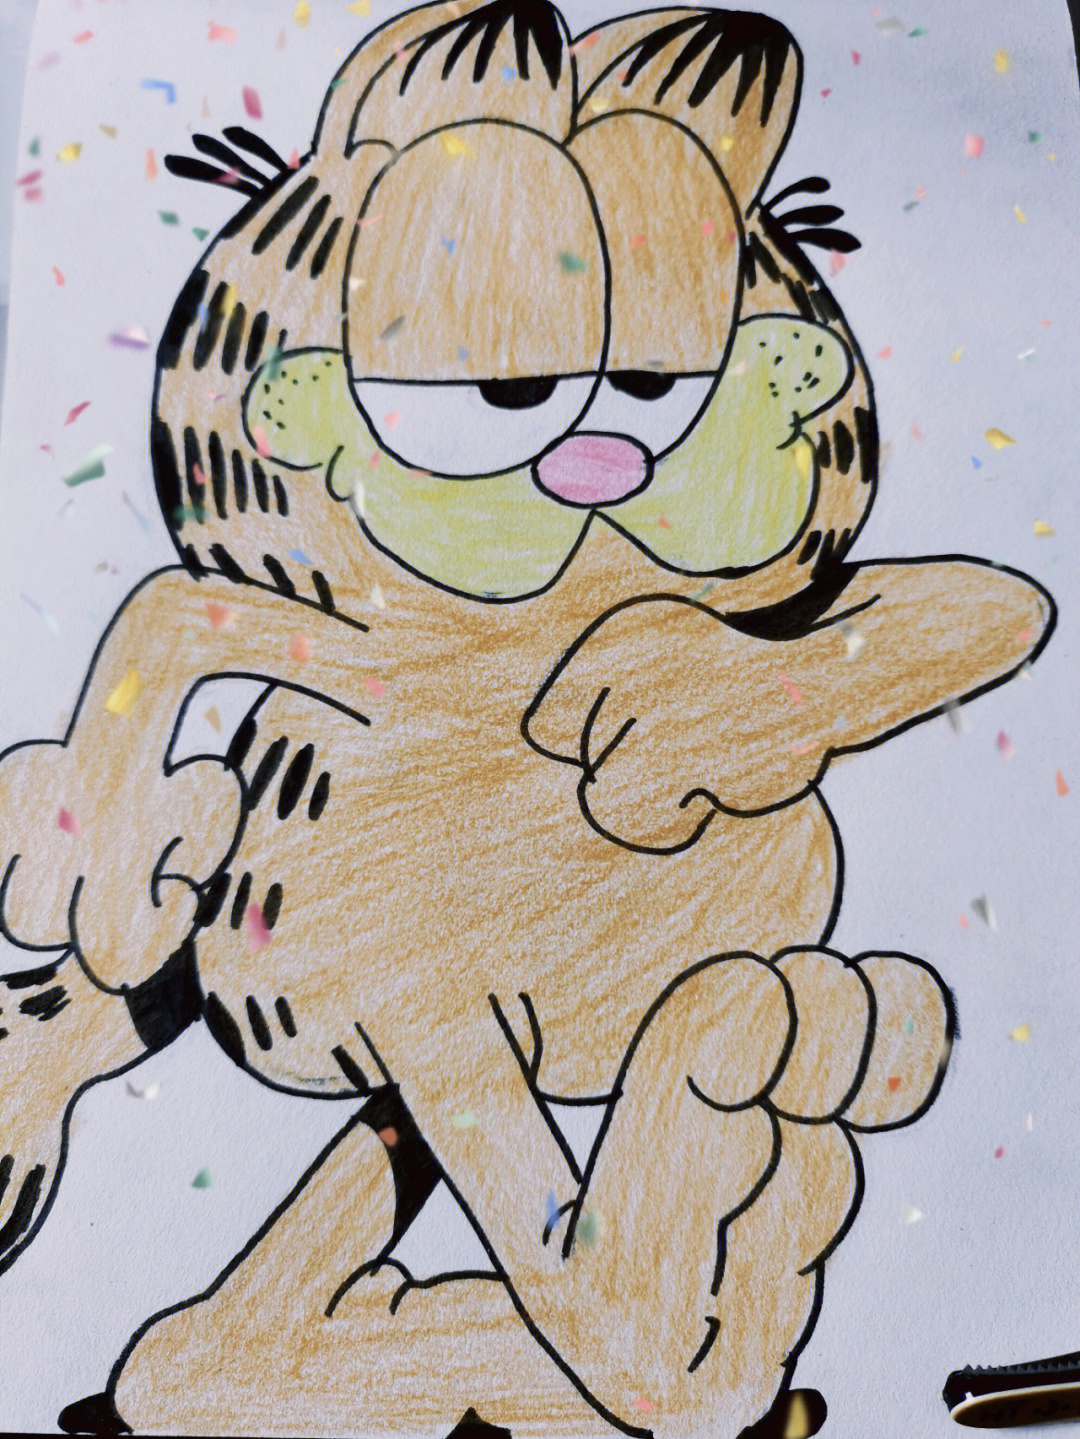 加菲猫简笔画 素描图片